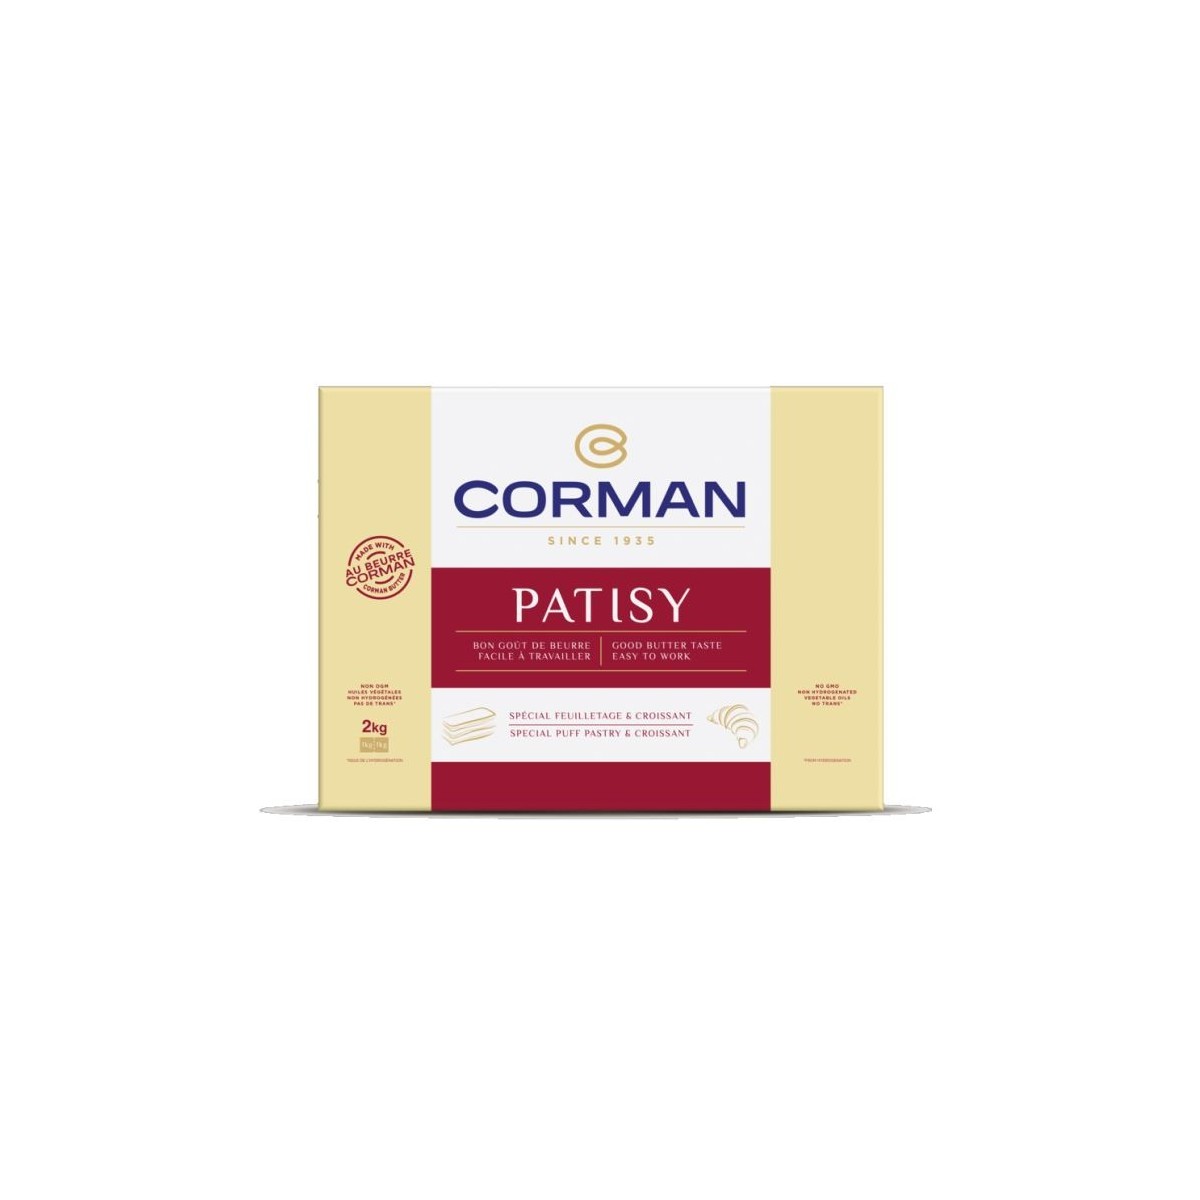 CORMAN PATISY FEUILLETAGE & CROISSANT 5 X 2 KG 0029754 